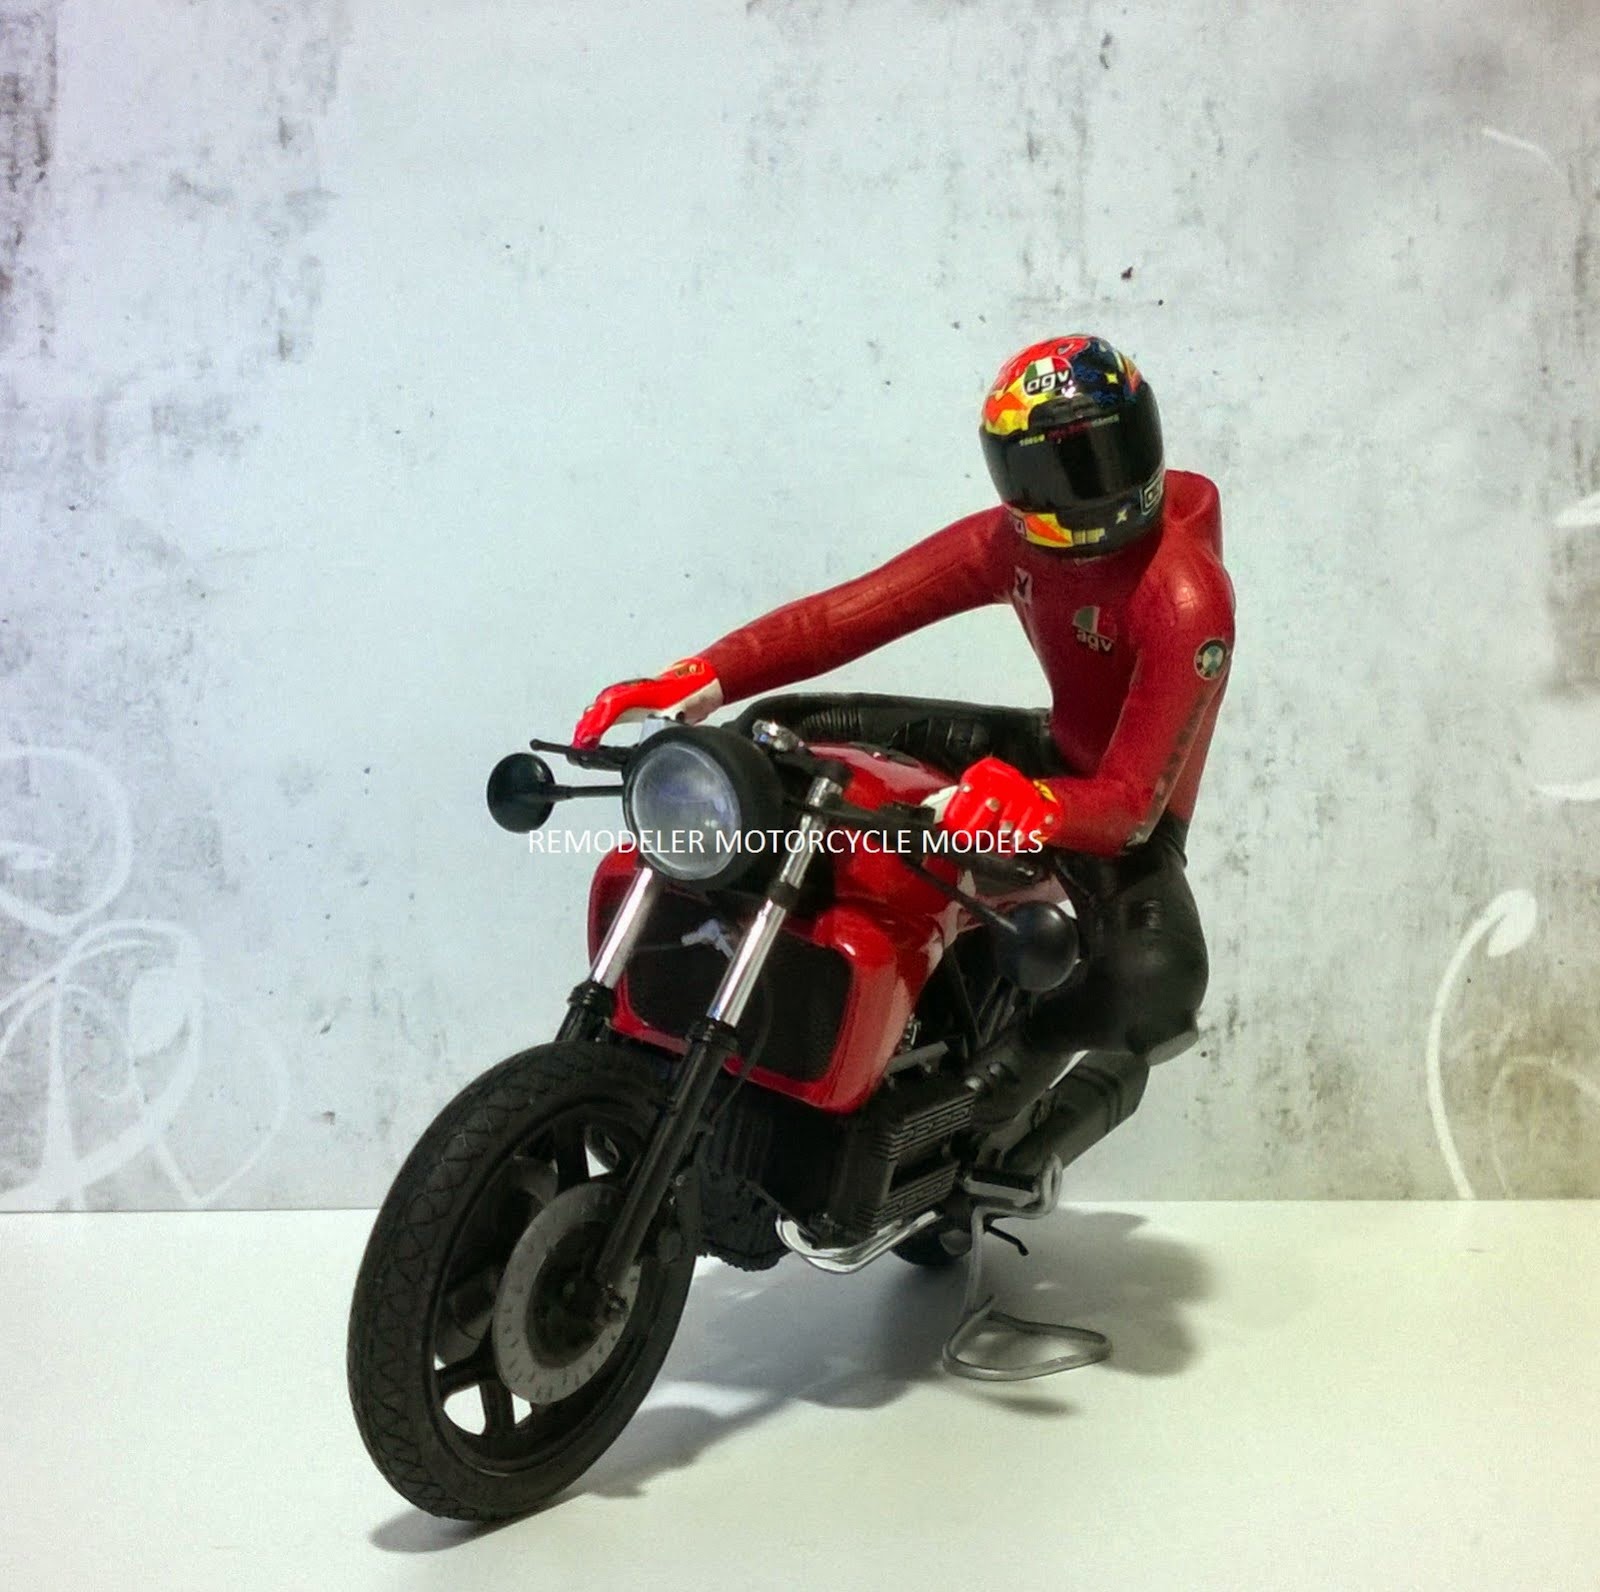 Rider#8&BMW k100